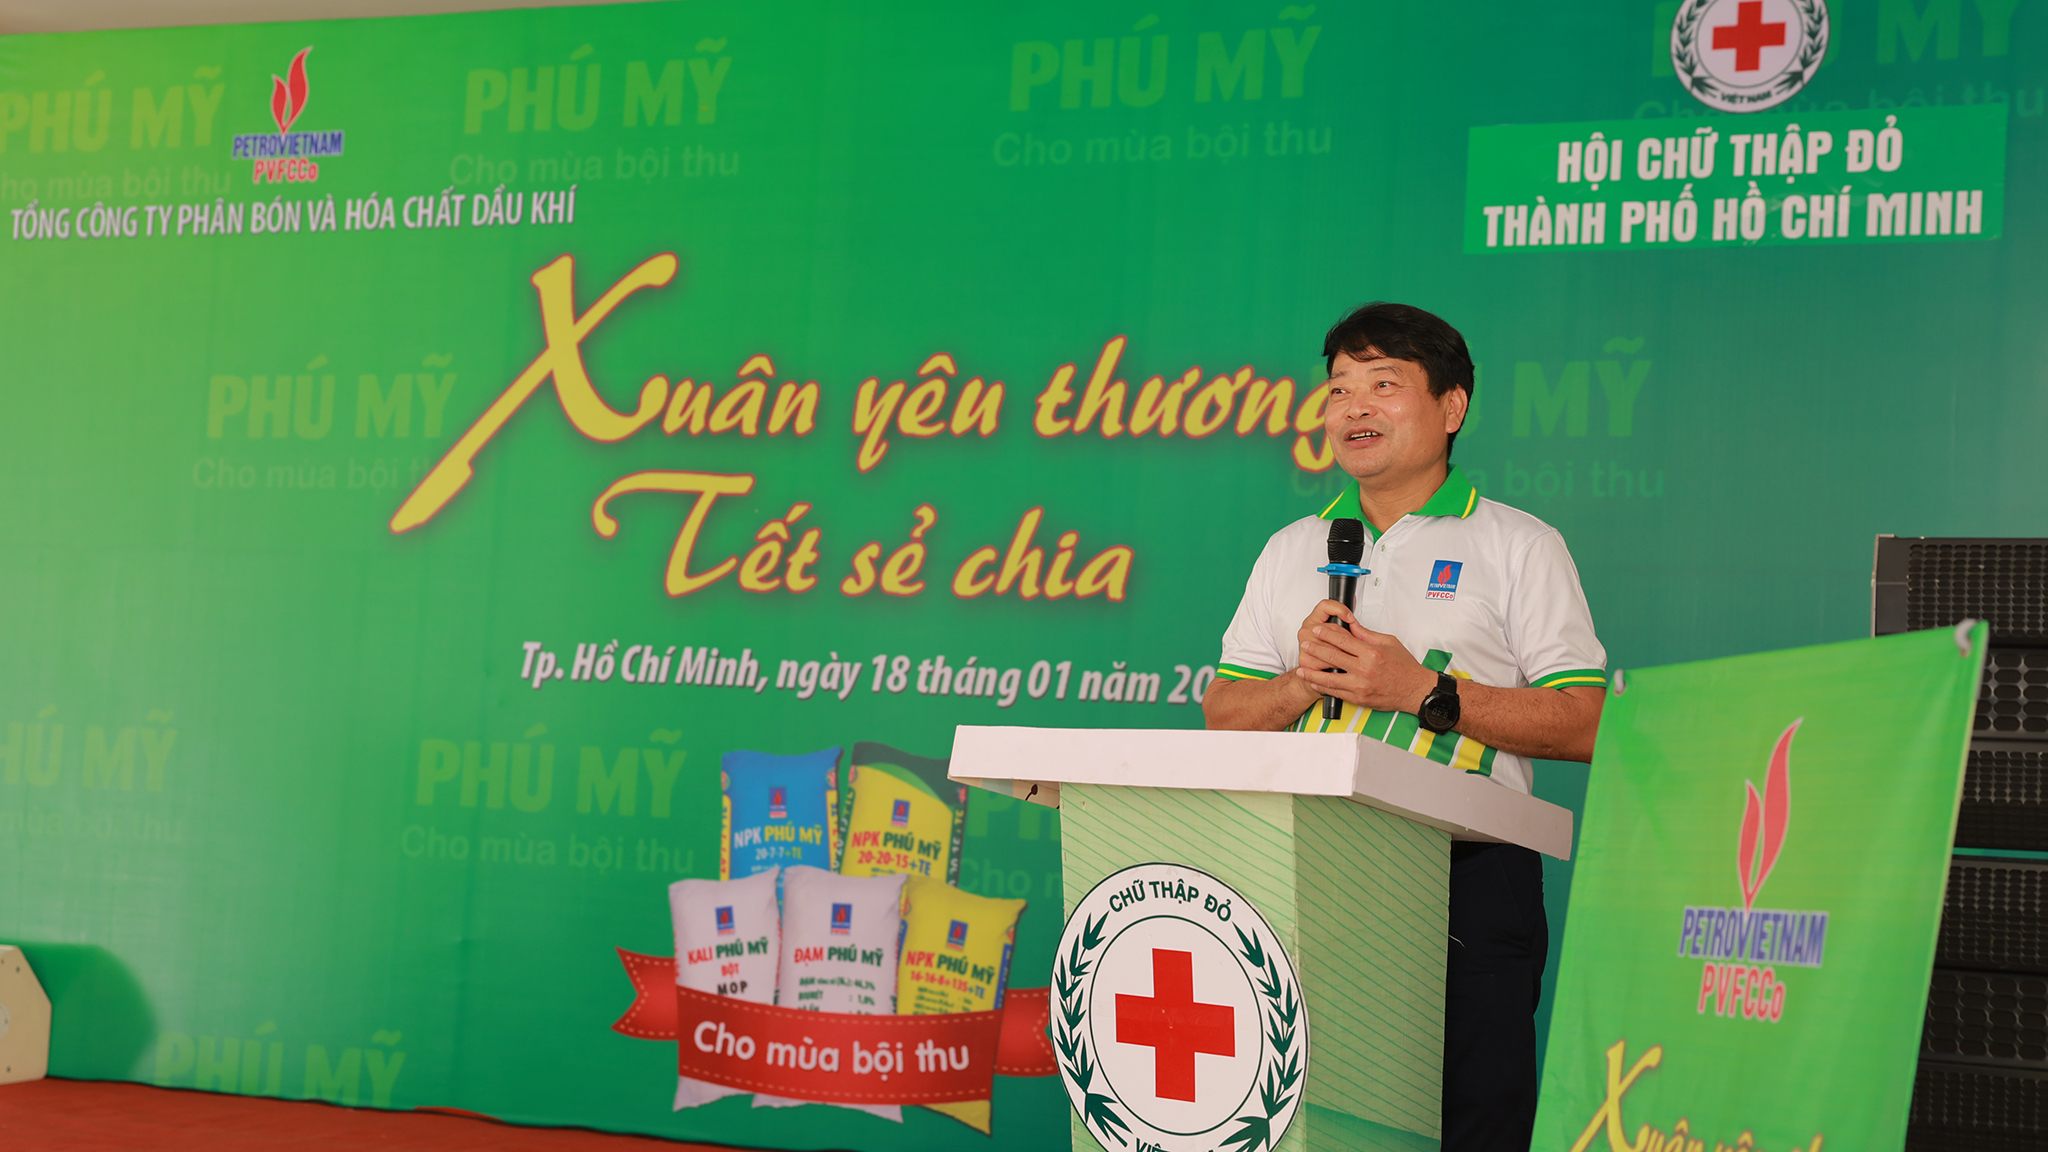 
PVFCCo tổ chức chương trình Tết vì người nghèo tại 100 xã phường cả nước - Ảnh 1.